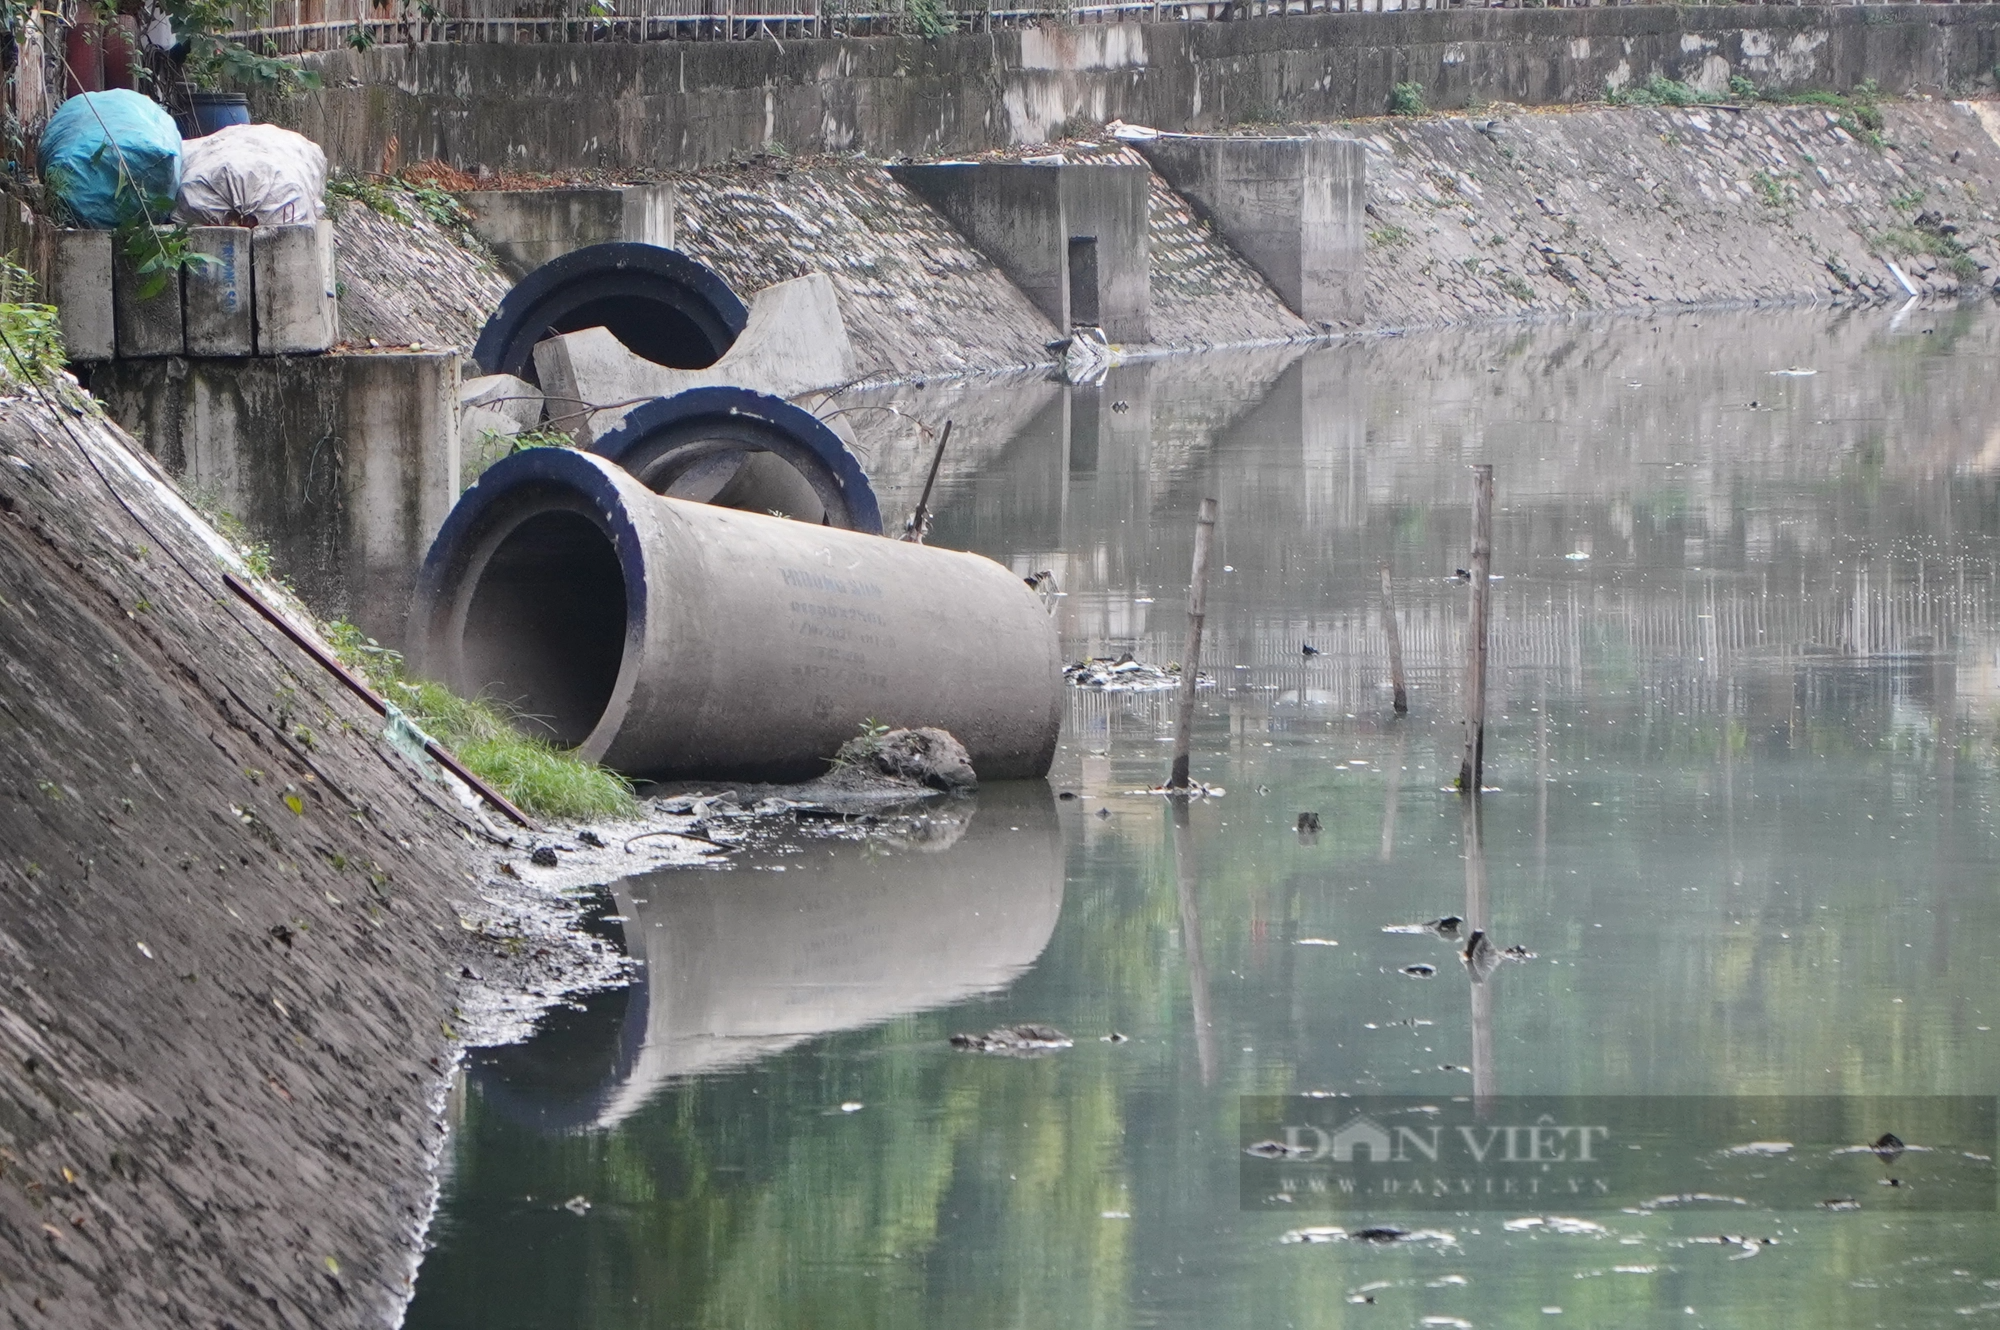  Dự án thu gom nước thải sinh hoạt trên sông Lừ vẫn ngổn ngang sau 3 năm khởi công - Ảnh 4.